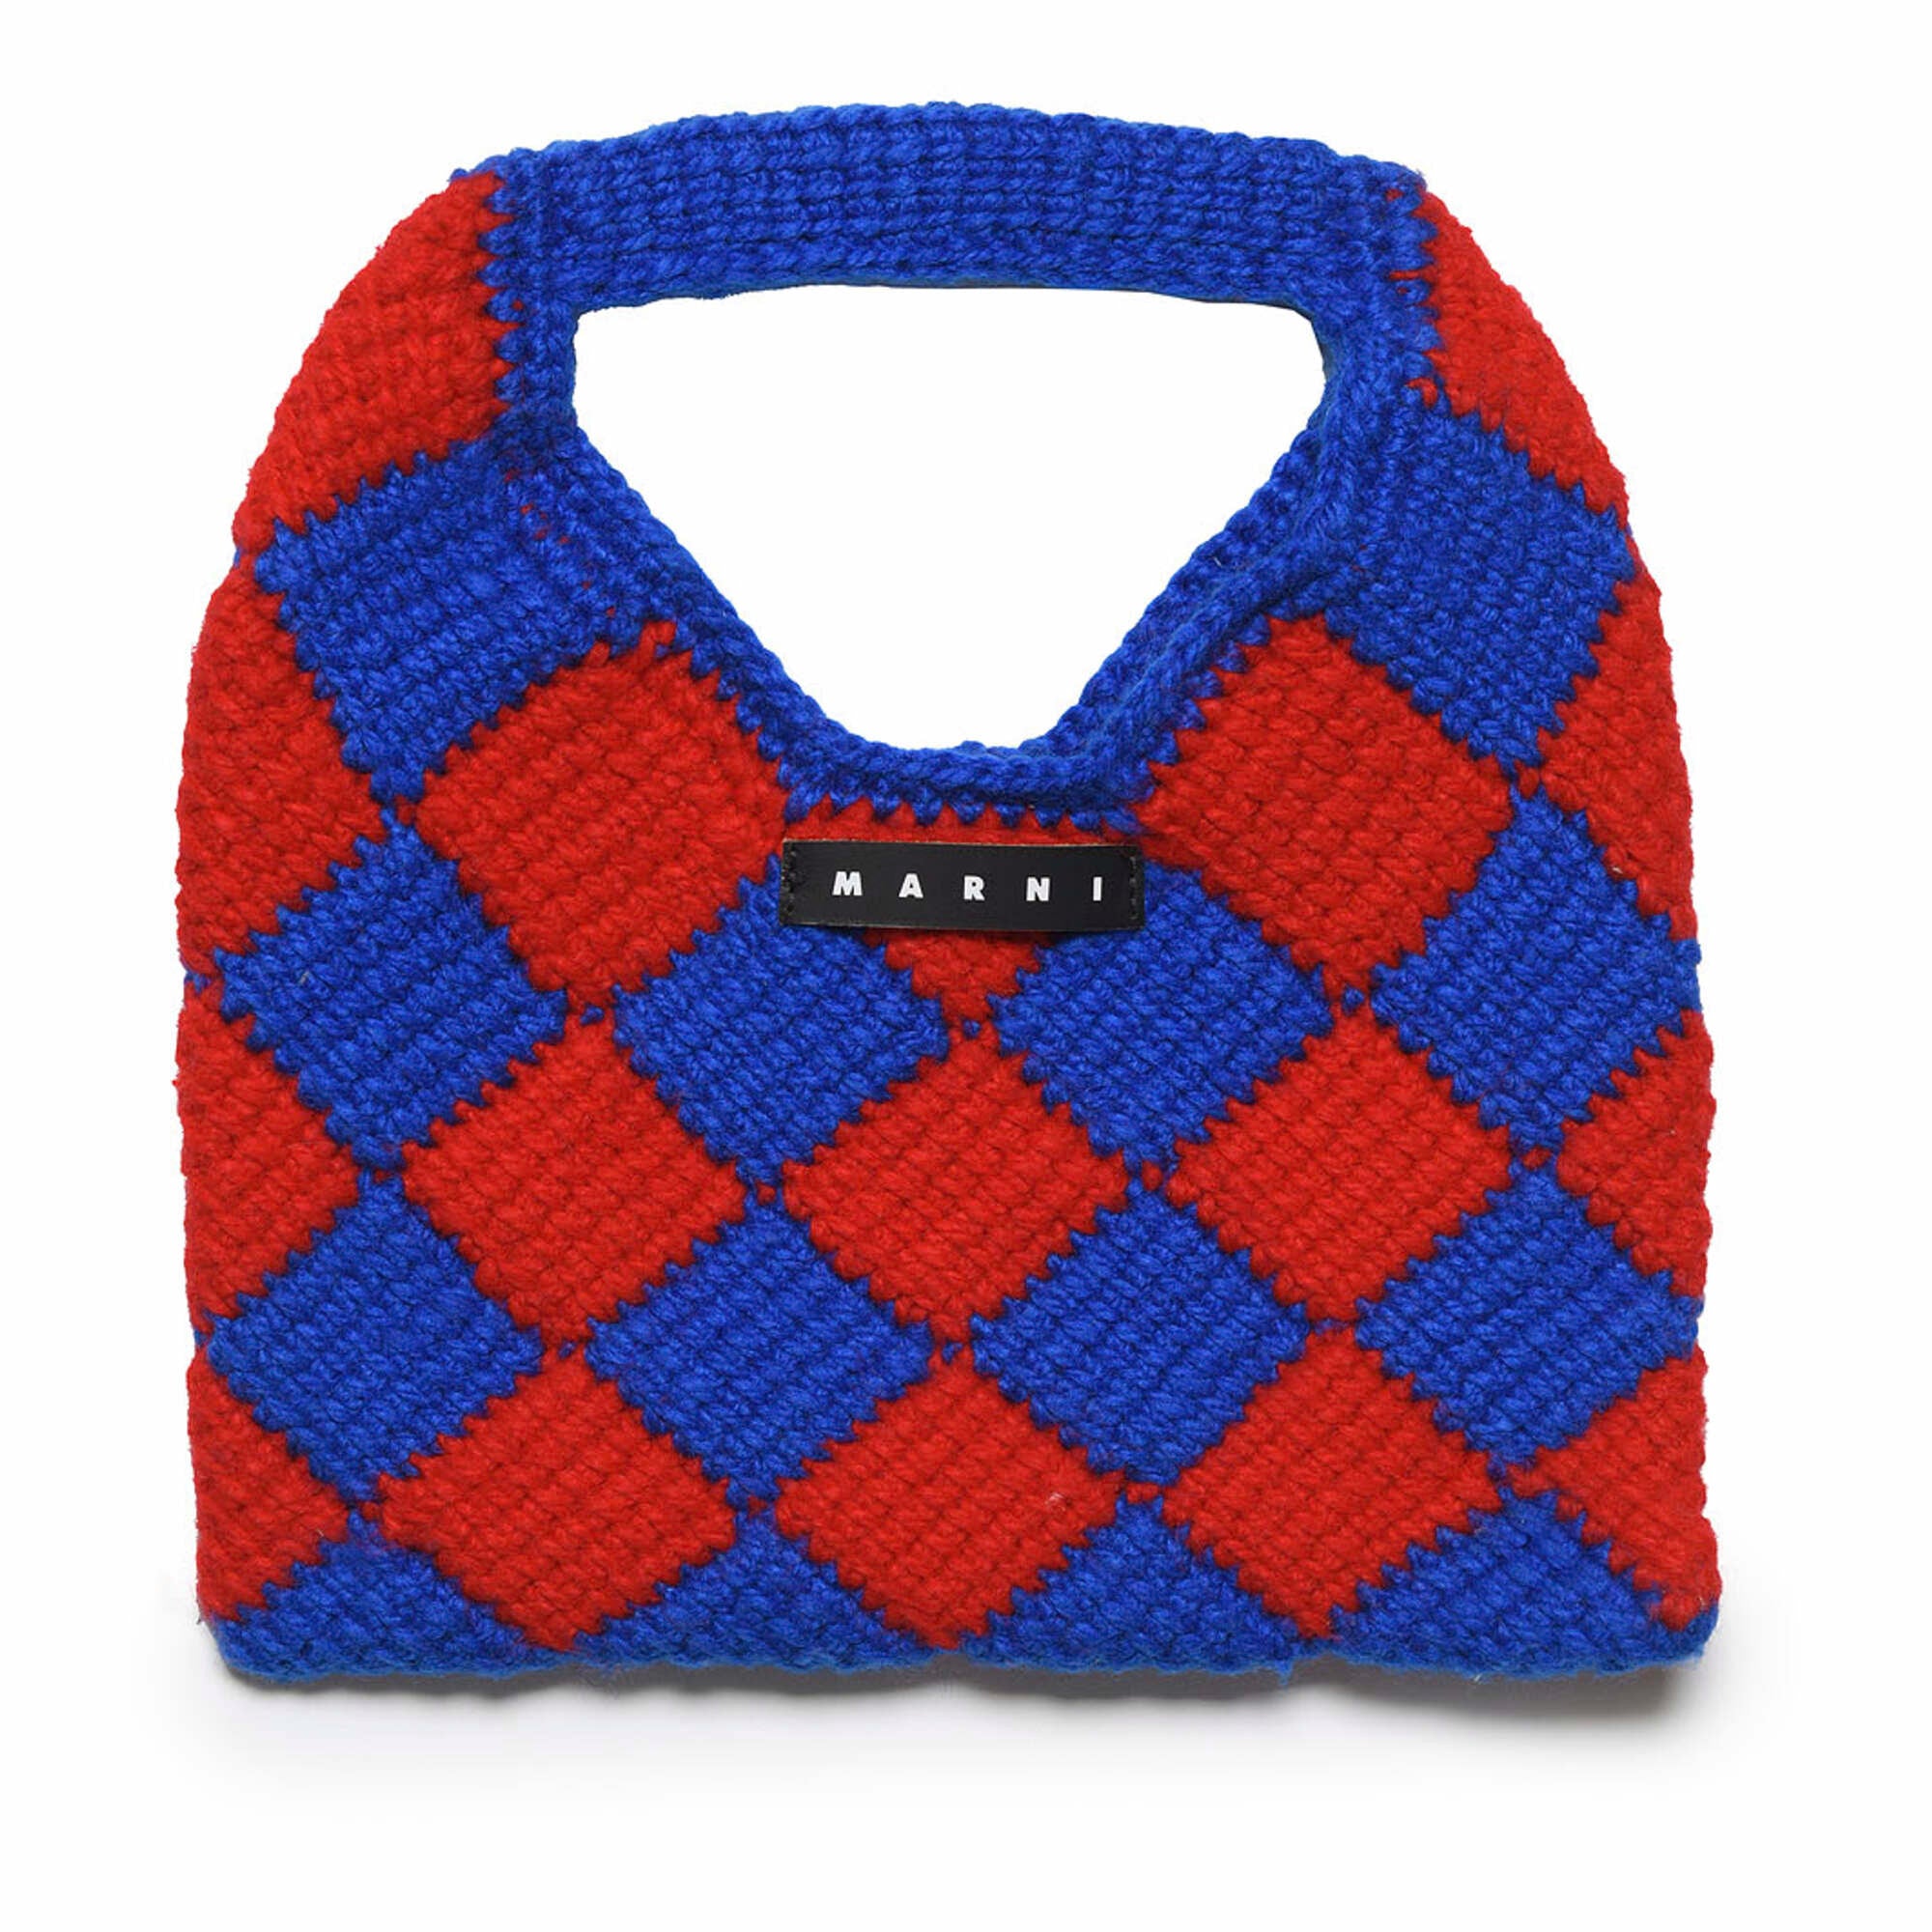 Girls Blue Check Crochet Handbag